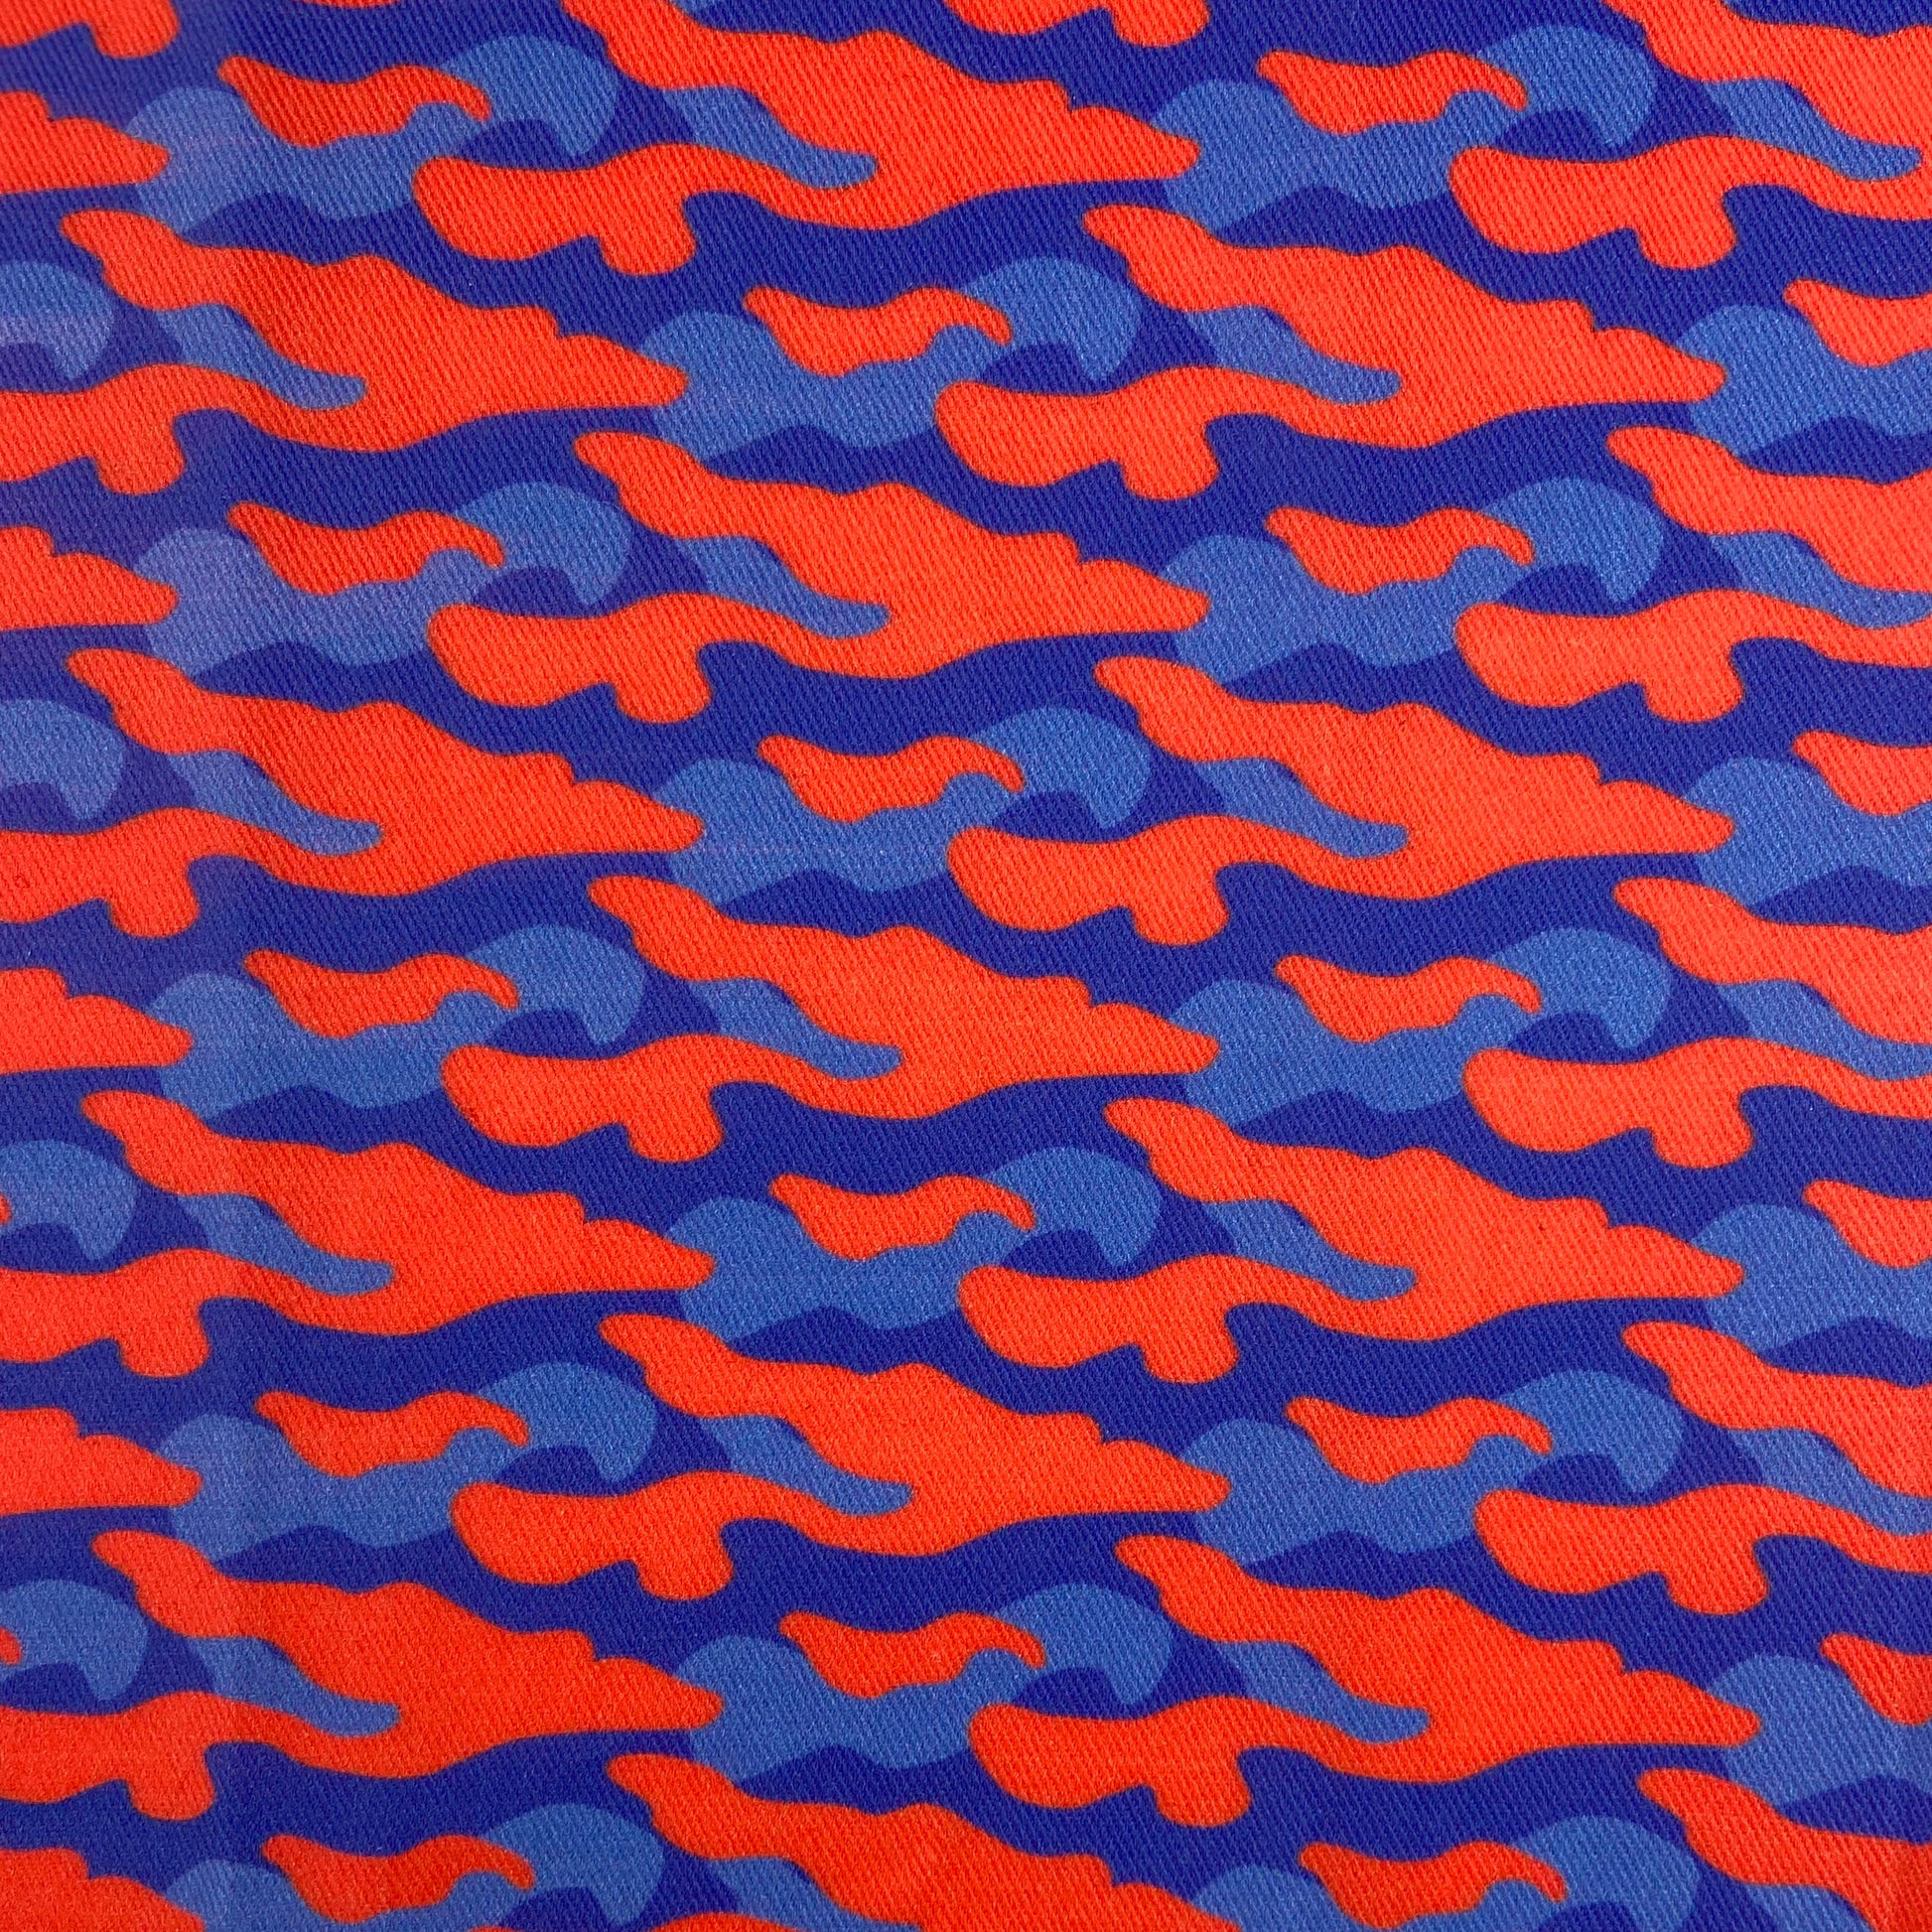 Sergé de coton impression camouflage pop plu taches orange vif bleu roi et bleu Klein indigo bleu royal camo pattern pop fluo vivid flashy armée army militaire années 80 